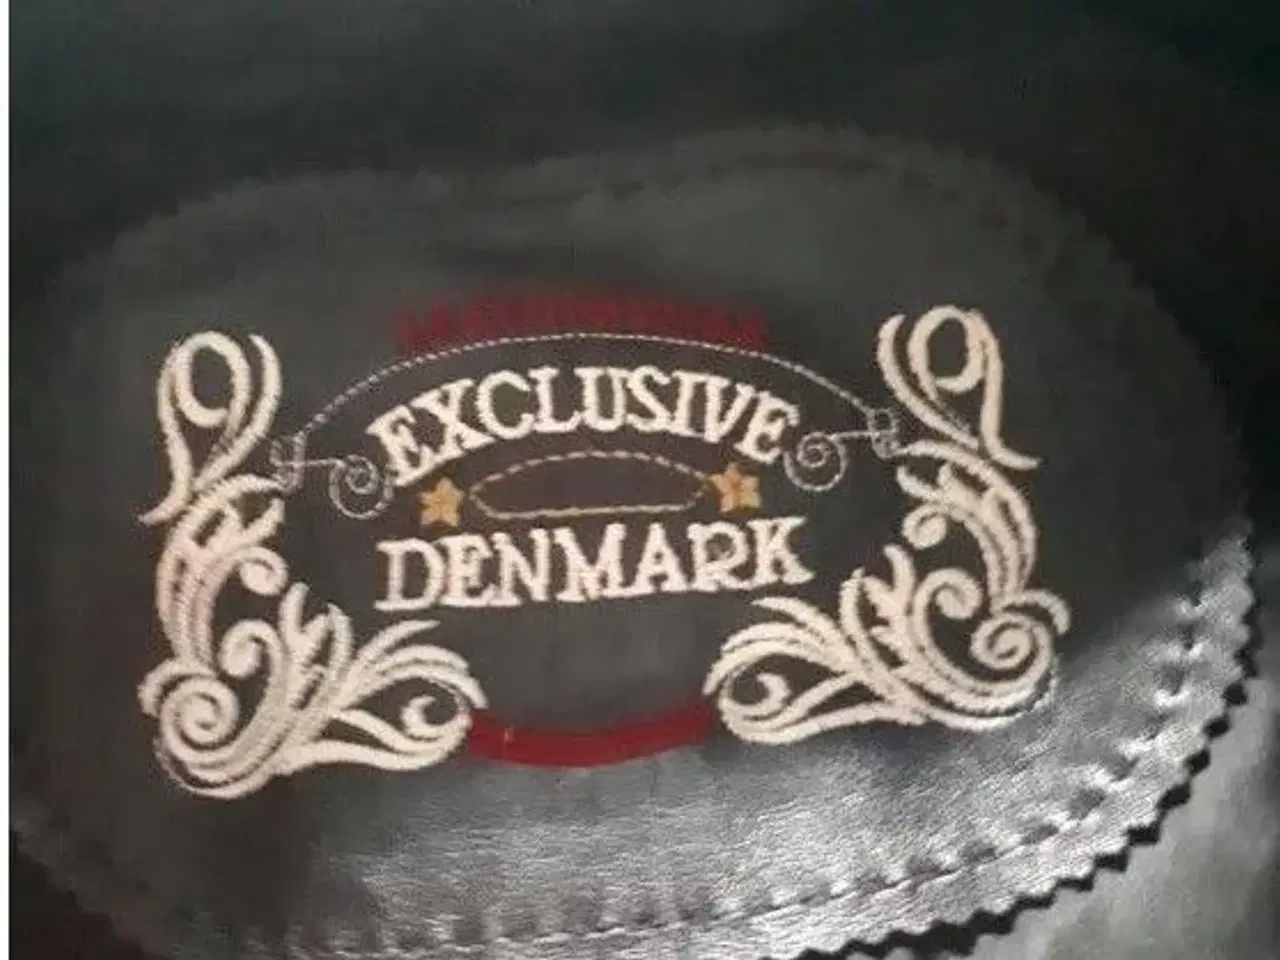 Billede 2 - Ægte Sælskindsjakke fra Exclusive Denmark